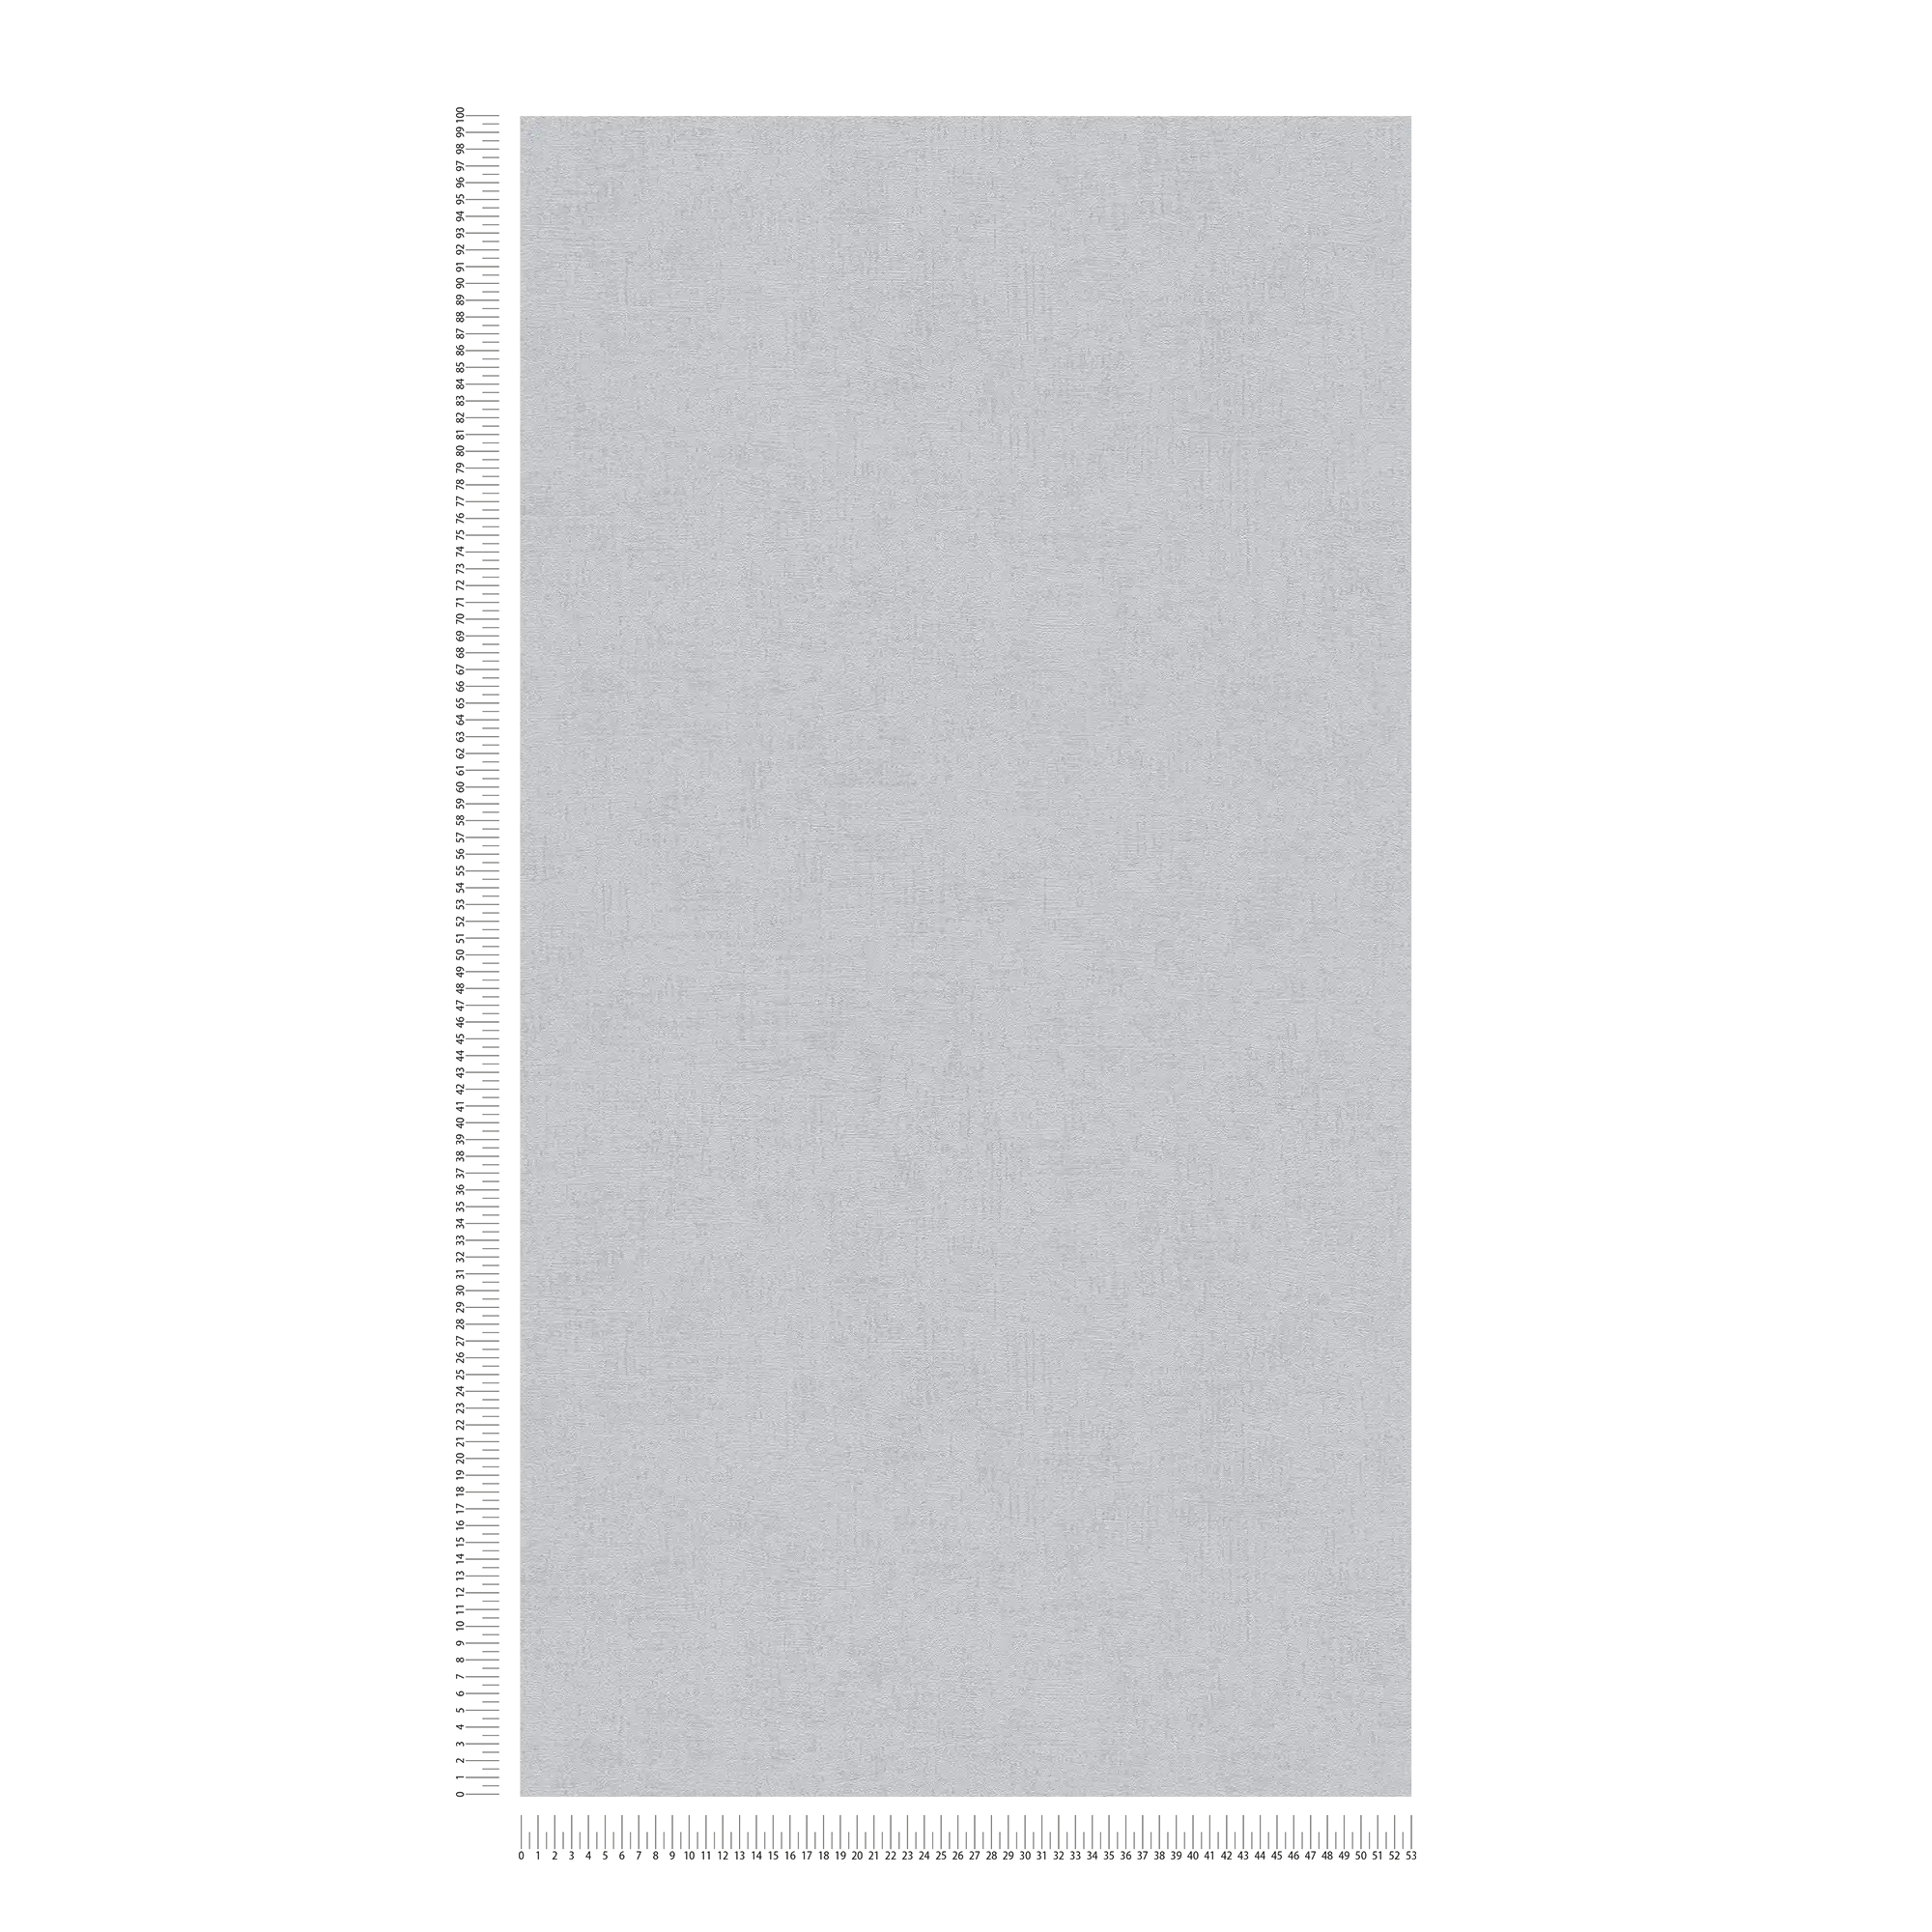             Papier peint chiné gris uni avec éclat métallique
        